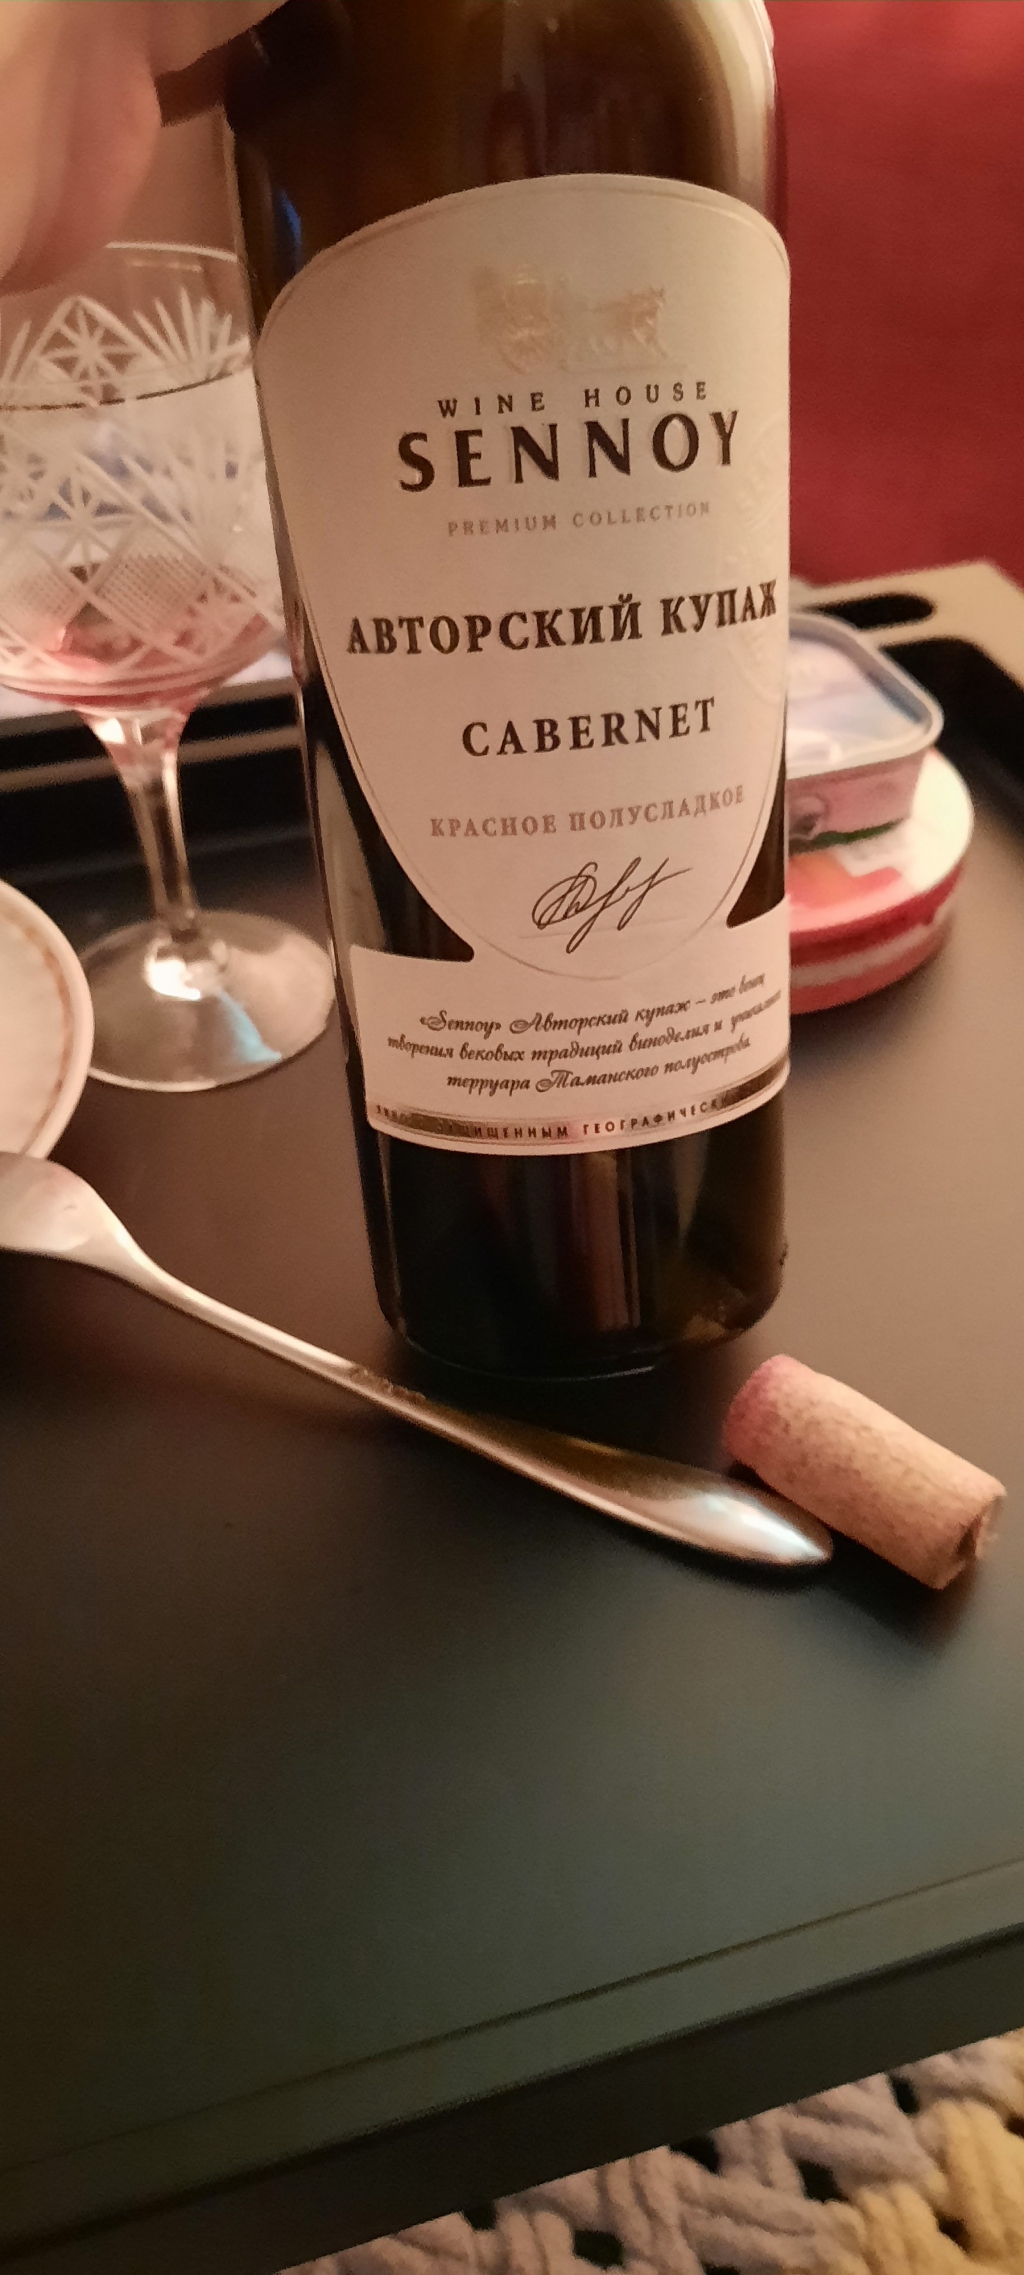 Wine House Sennoy - Cabernet